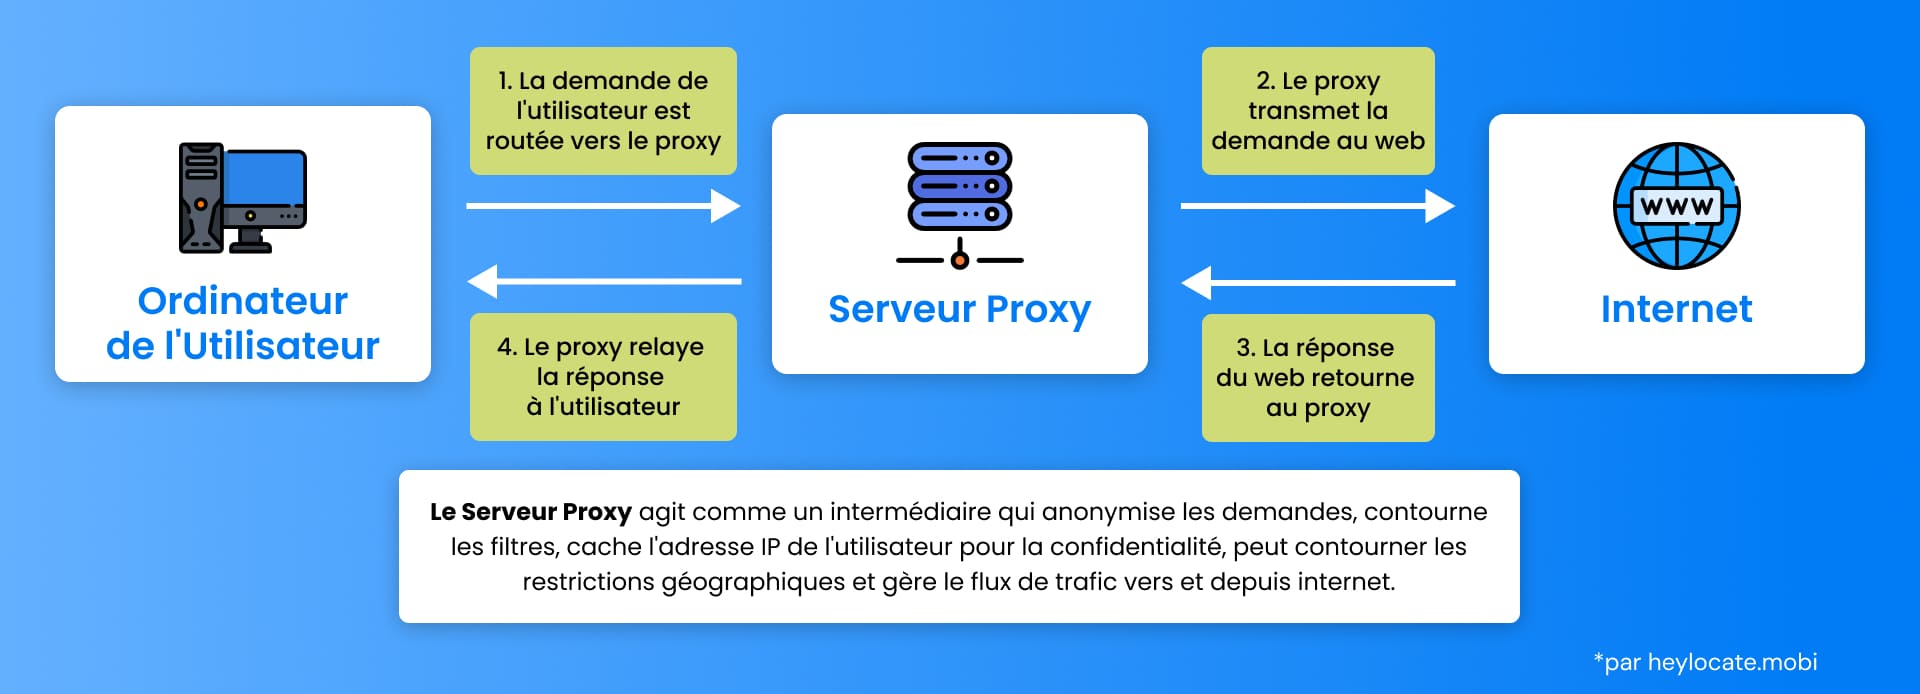 Un organigramme illustrant le rôle d'un serveur proxy dans le traitement de la demande d'un utilisateur sur l'internet, détaillant les étapes entre l'ordinateur de l'utilisateur et le web et vice-versa.